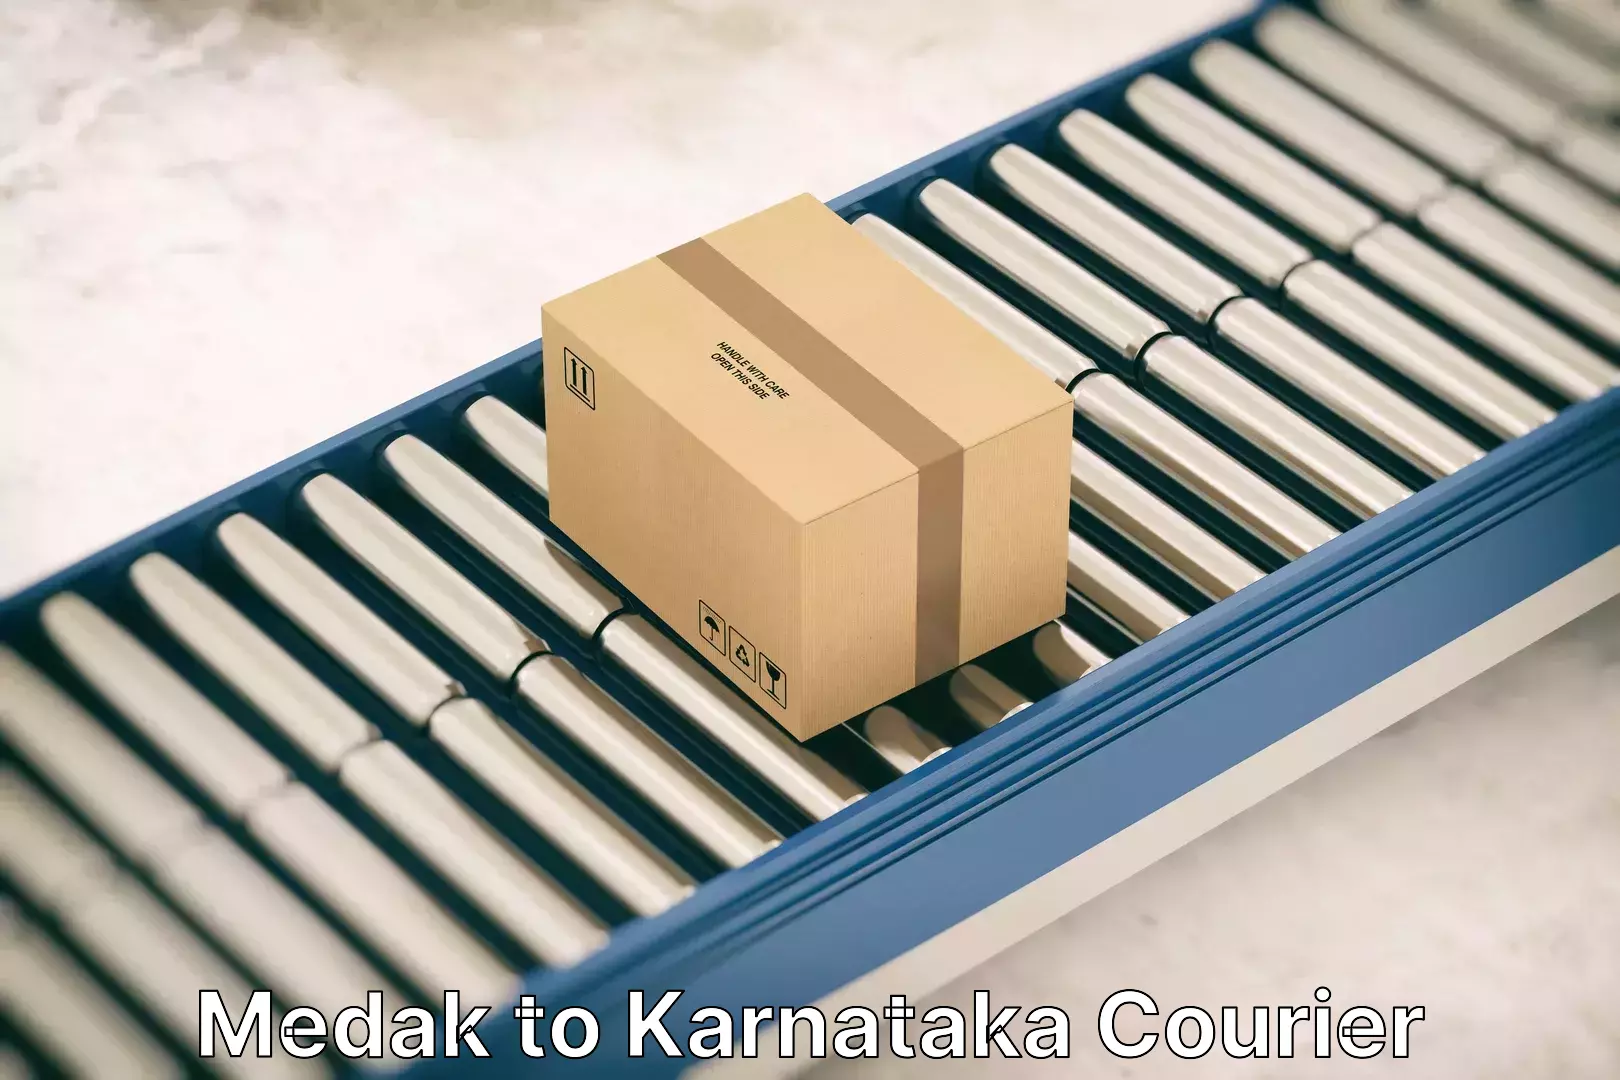 Furniture moving experts Medak to Karnataka